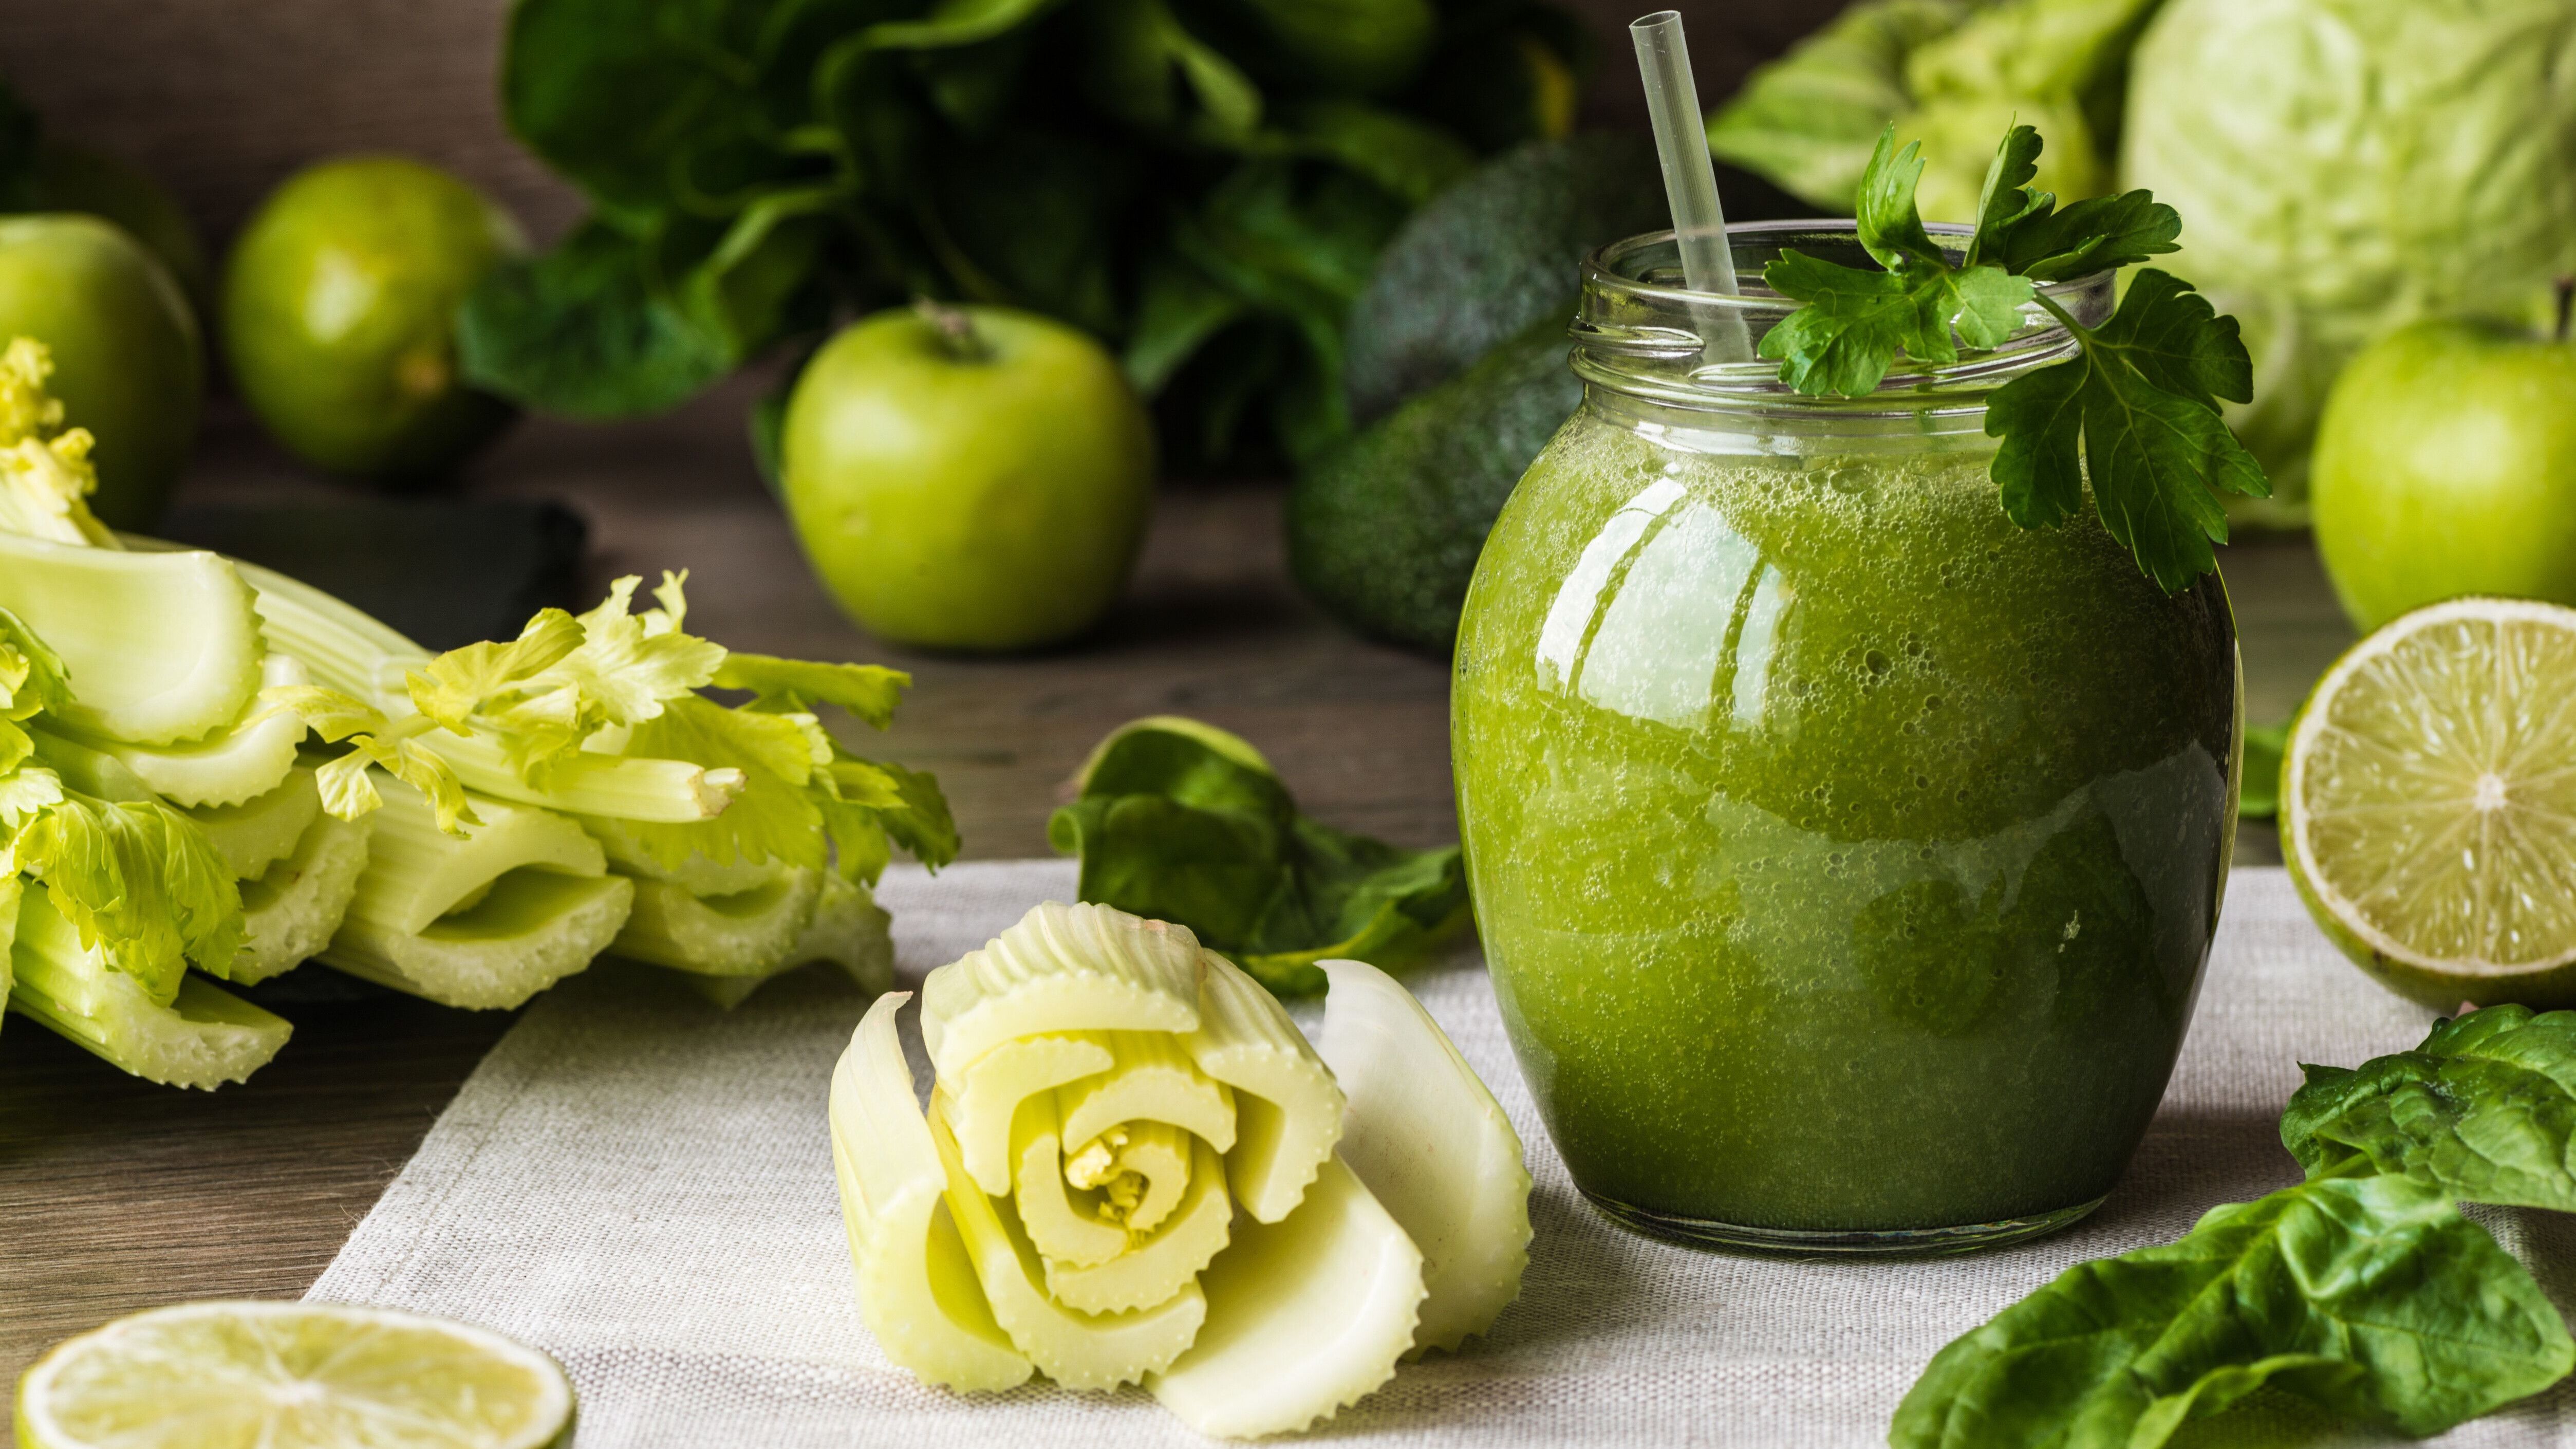 Willst du deinem Körper etwas Gutes tun? Dann probiere den leckeren Spinat-Gurken-Sellerie Saft. 